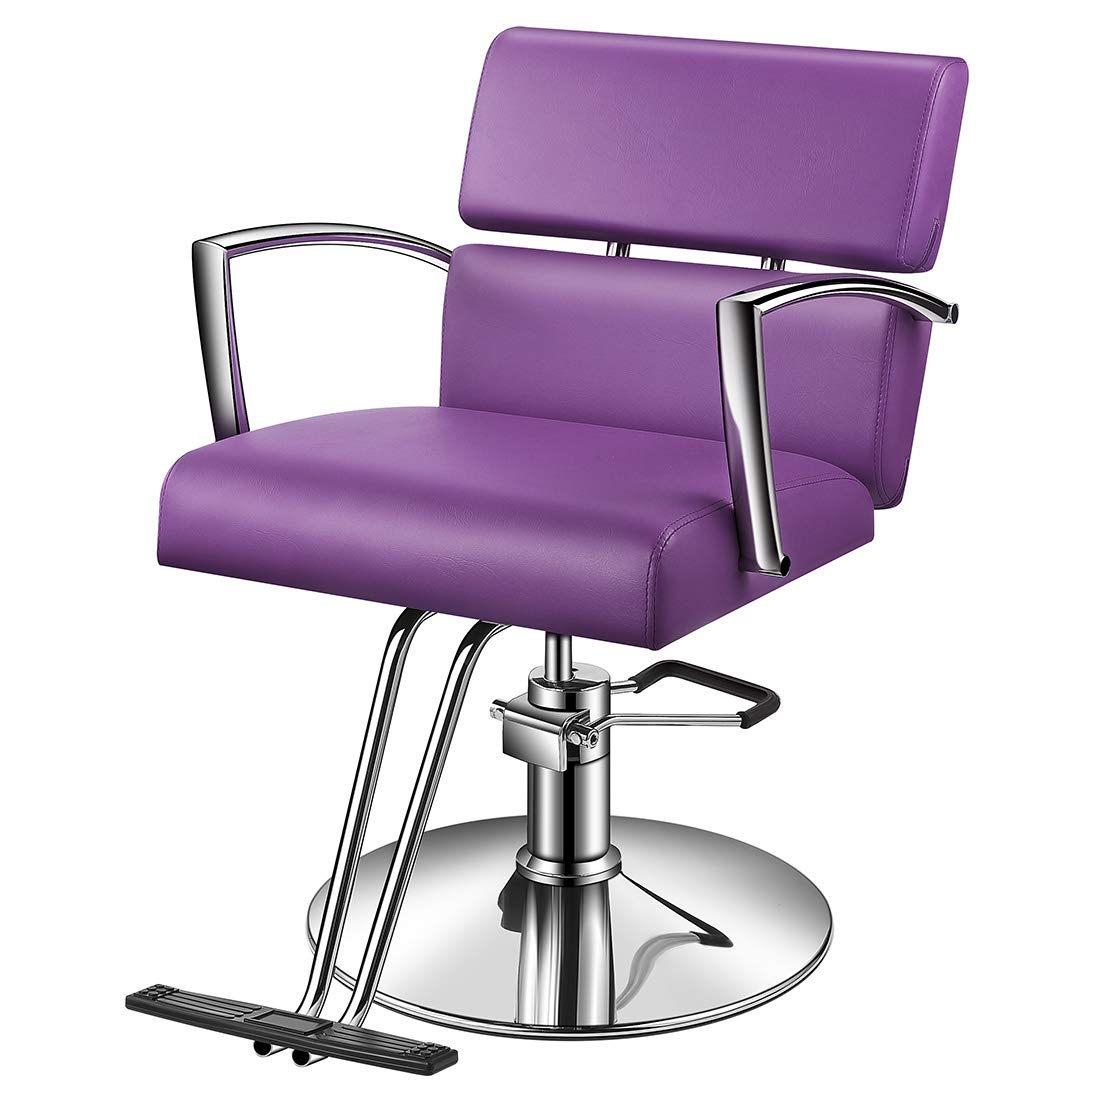 Mua Salon Chair, Baasha Beauty Barber Chair with Vented Back Design, Purple Styling  Chair for Salon, Beauty Spa Equipment Salon Chairs for Hair Stylist Women  Man trên Amazon Mỹ chính hãng 2023 |